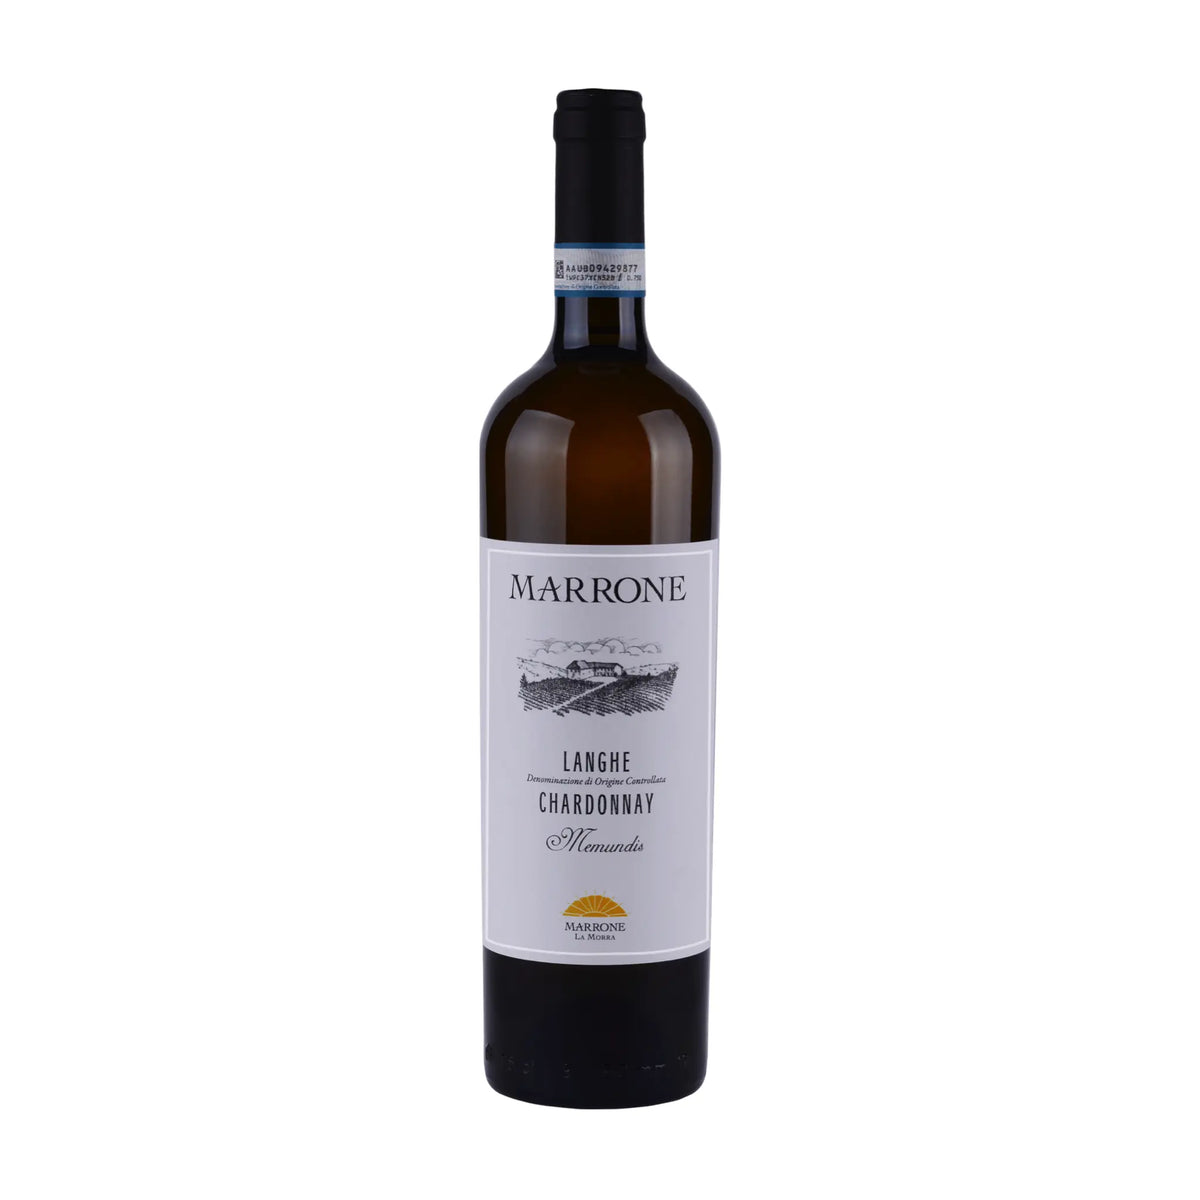 Marrone-Weißwein-Chardonnay-Piemont-Italien-Memundis Langhe DOC Chardonnay-WINECOM